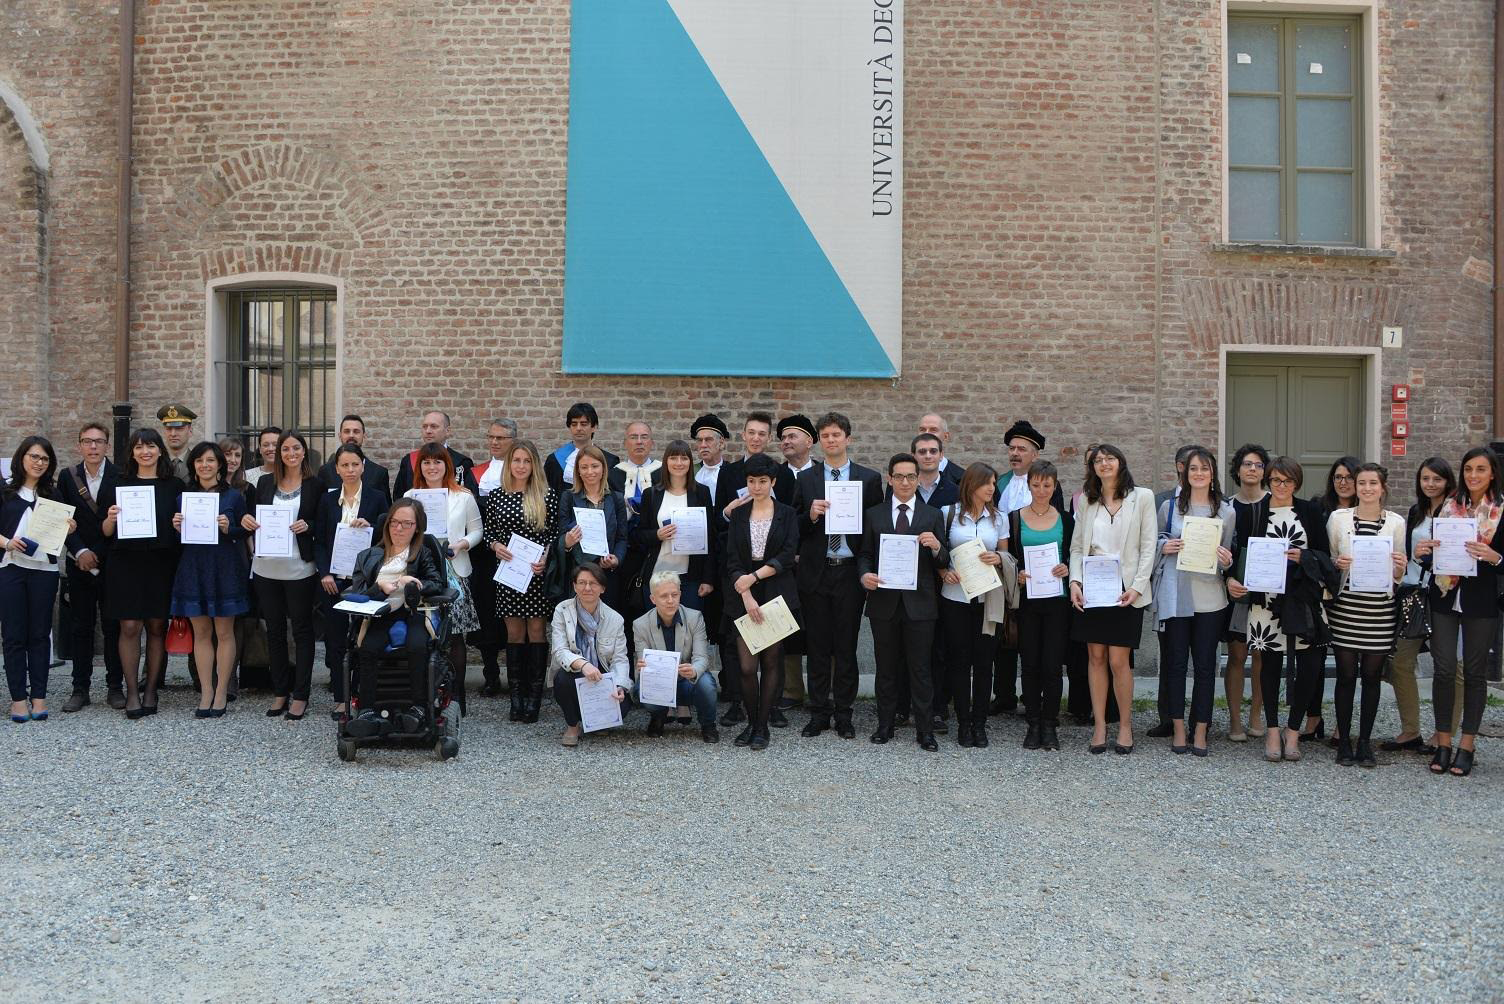 Cerimonia di premiazione dei migliori laureati dell’Università degli Studi di Torino